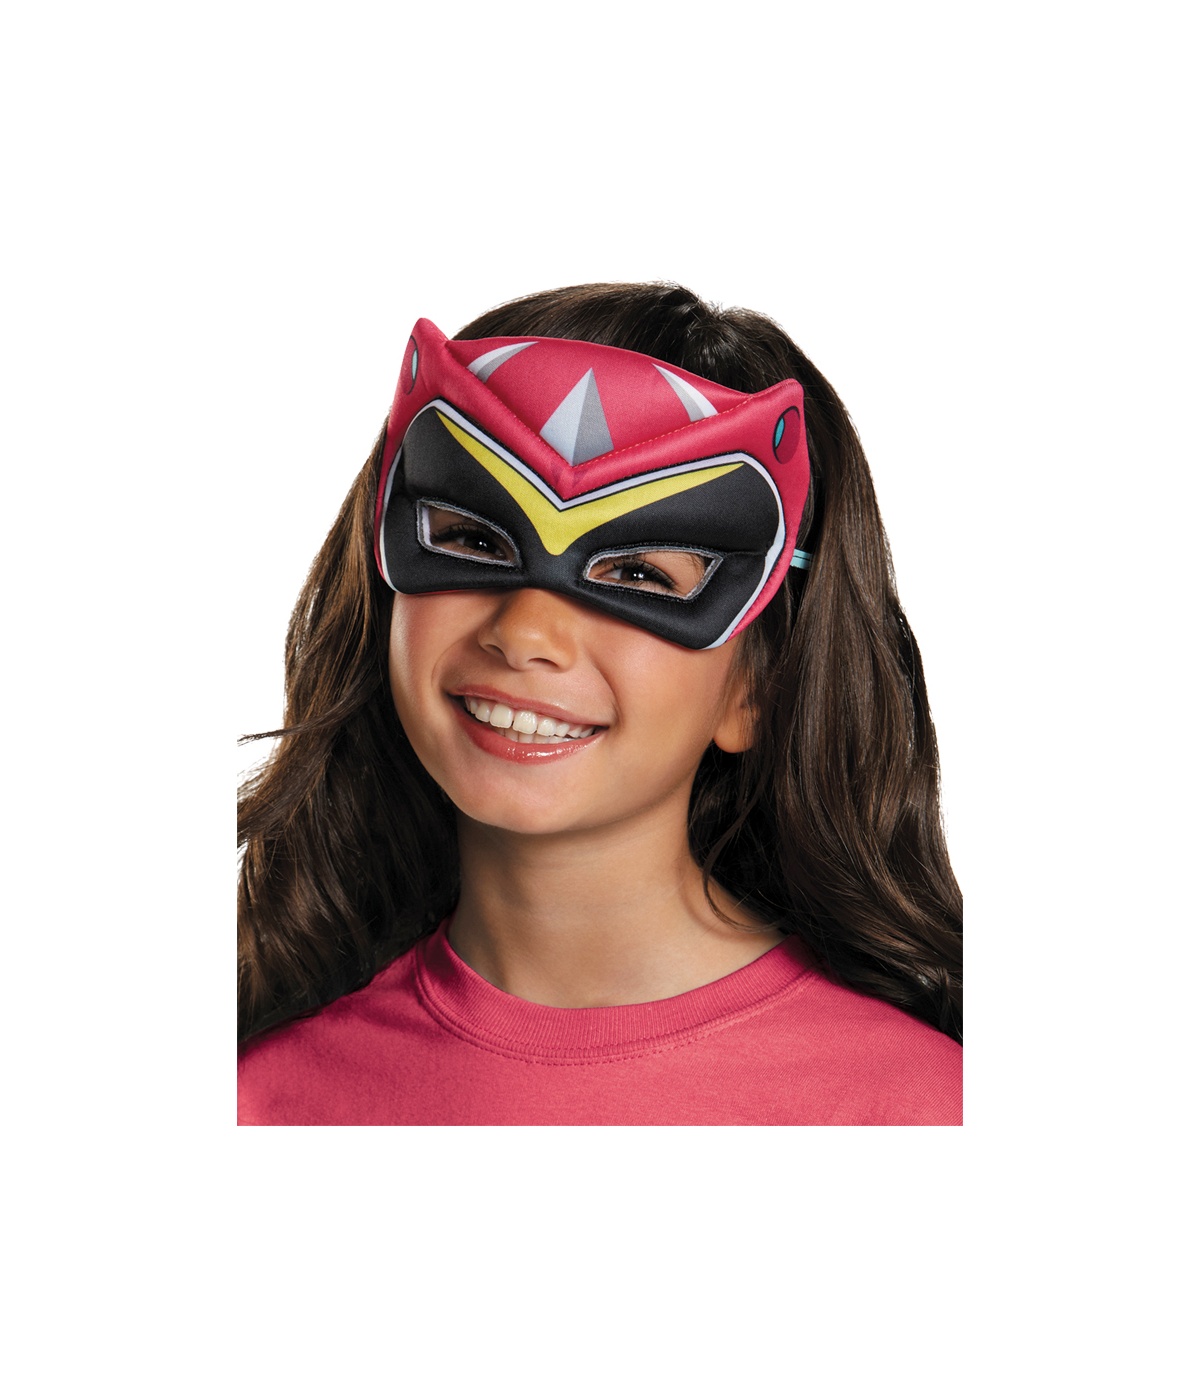  Girls Power Ranger Puffy Mask